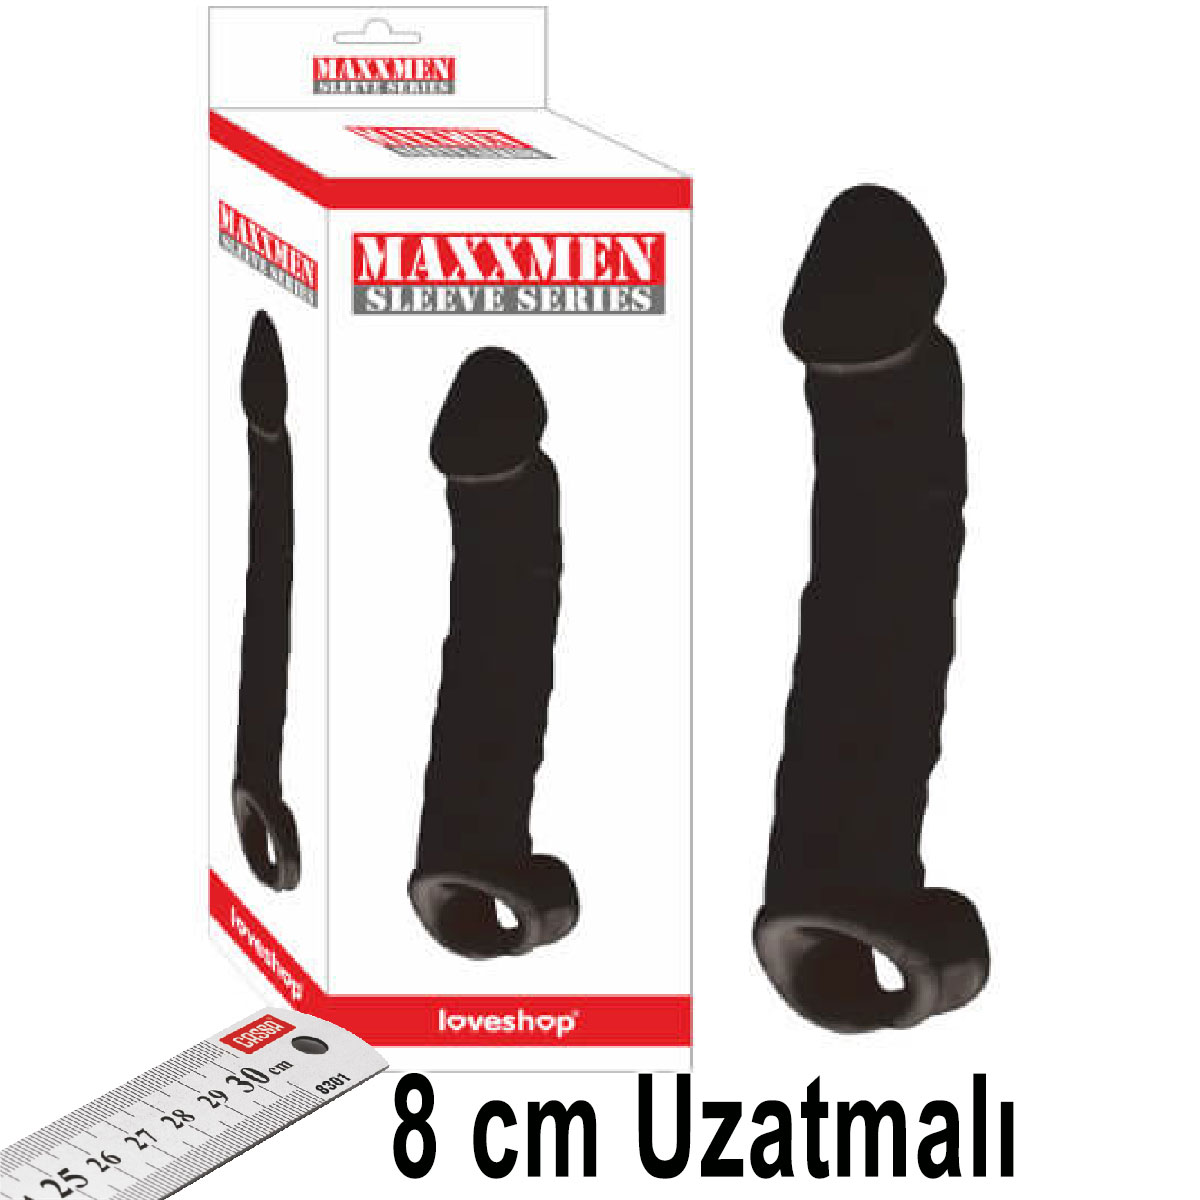 Maxxmen Sleeve 8 cm Uzatmalı Testis Kelepçeli Realistik Et Dokusunda Siyah Penis Kılıfı AL-LS466-B-Black